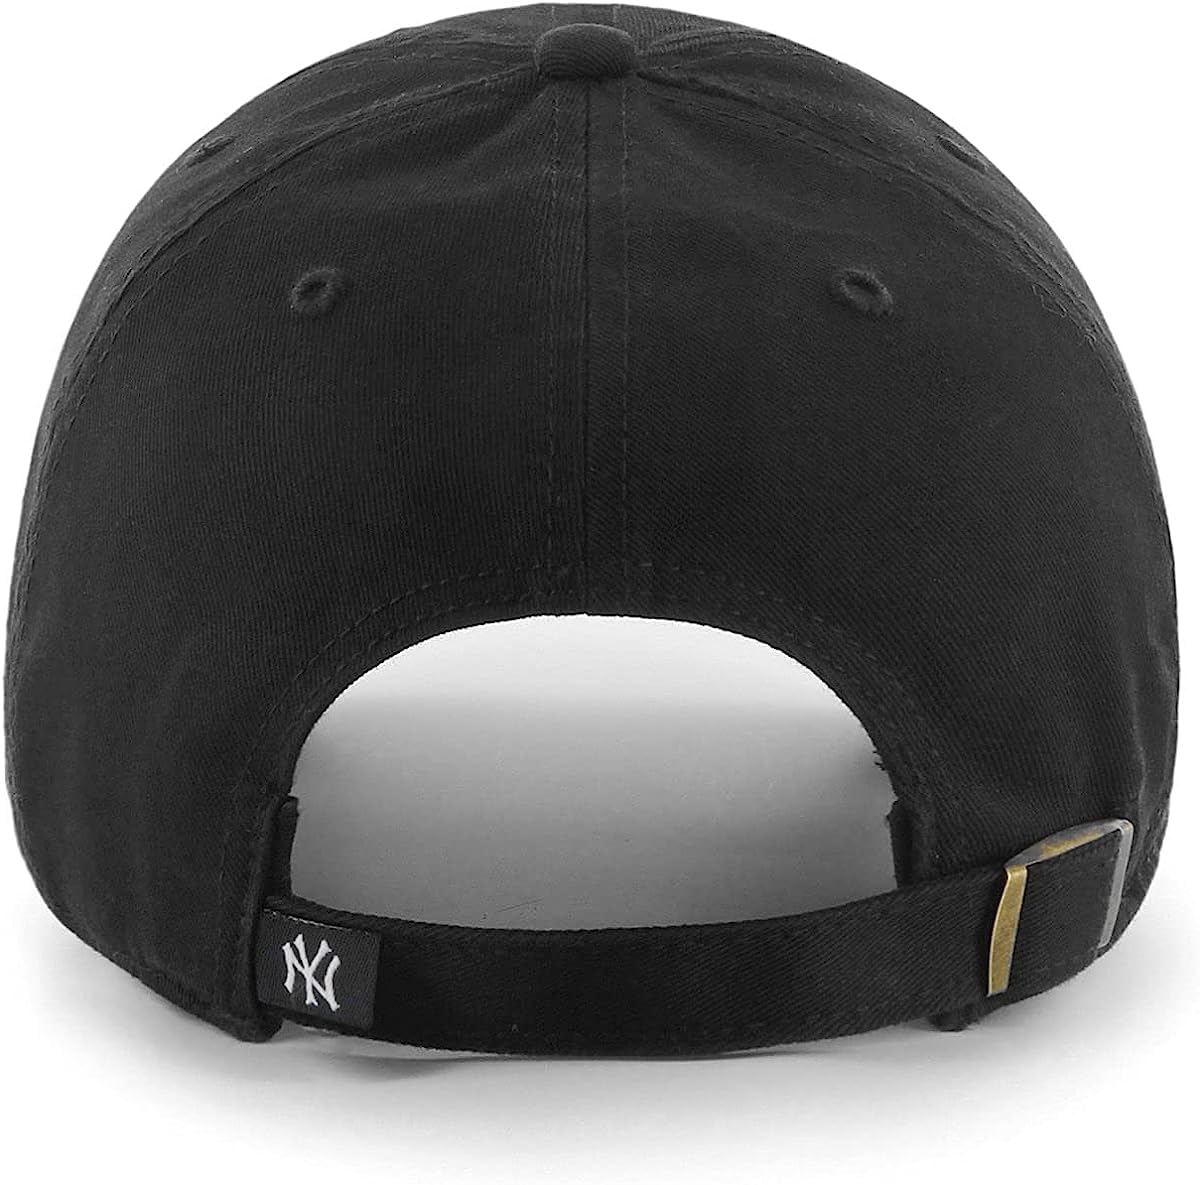 PRODUCTO 548 47 MLB Gorra ajustable Clean Up en blanco y negro, talla única para adulto (New York Yankees negro)